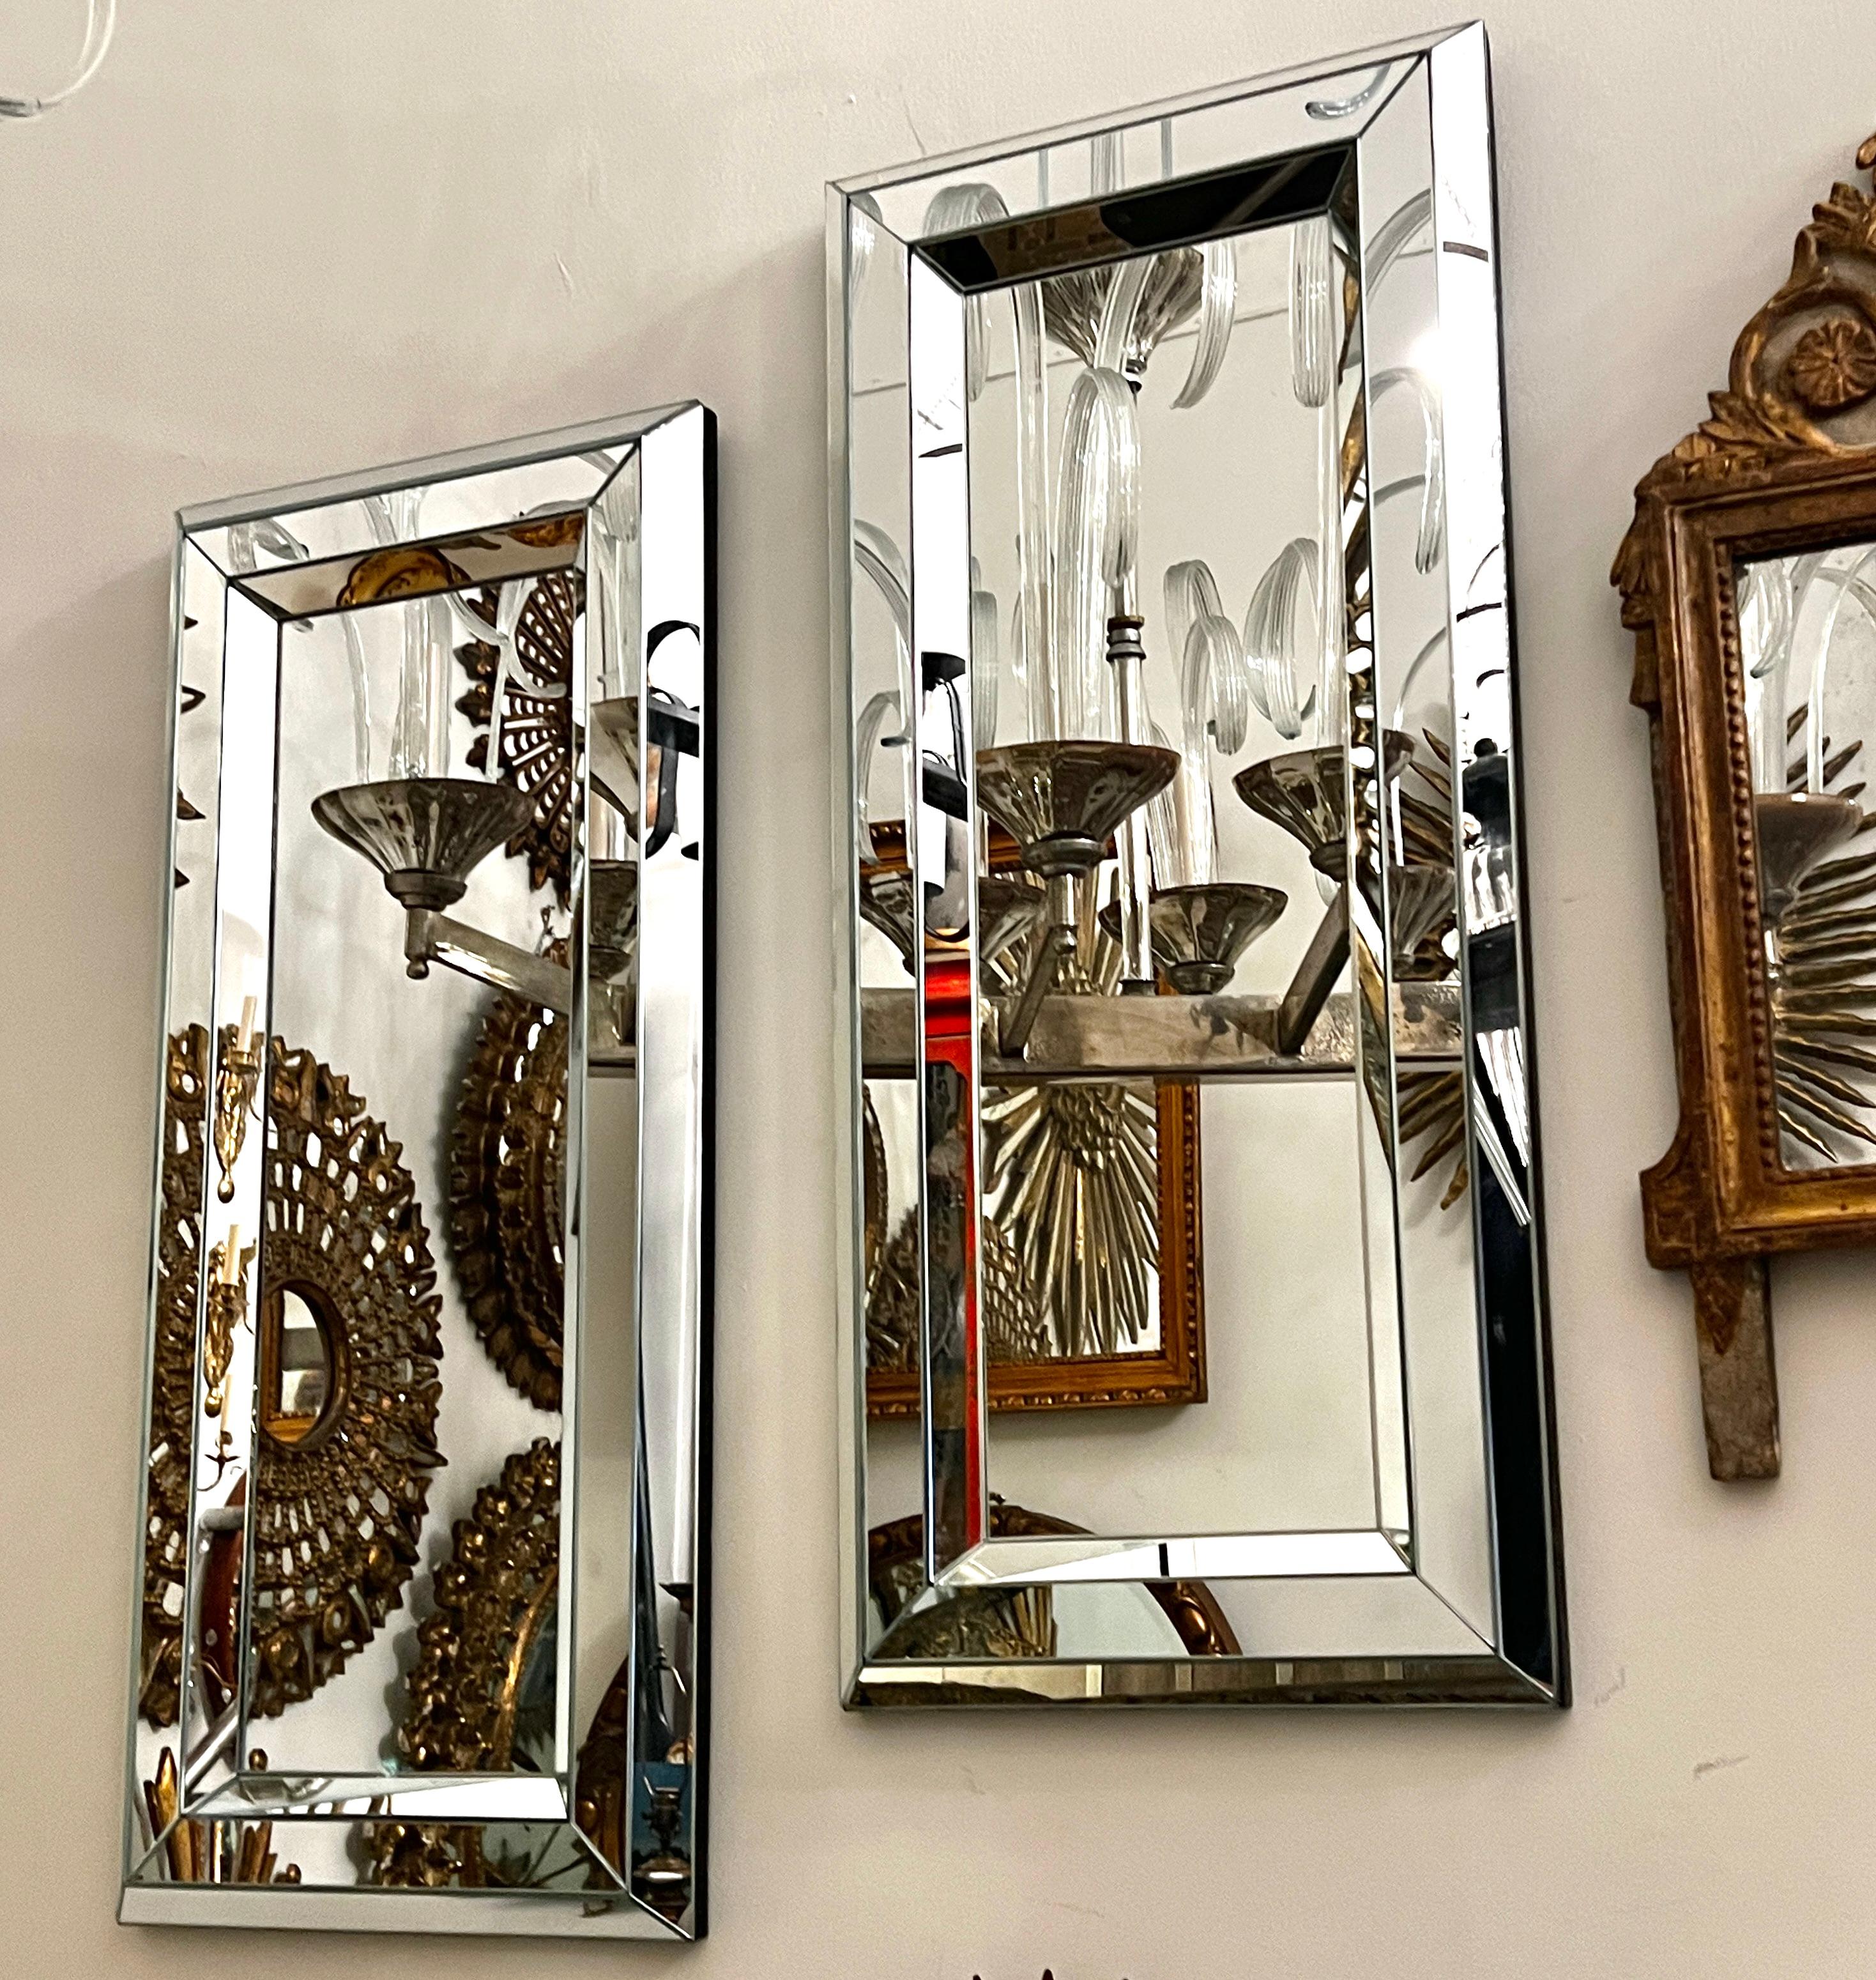 Paire de miroirs français datant des années 1970 avec cadre géométrique.

Mesures :
Hauteur : 36